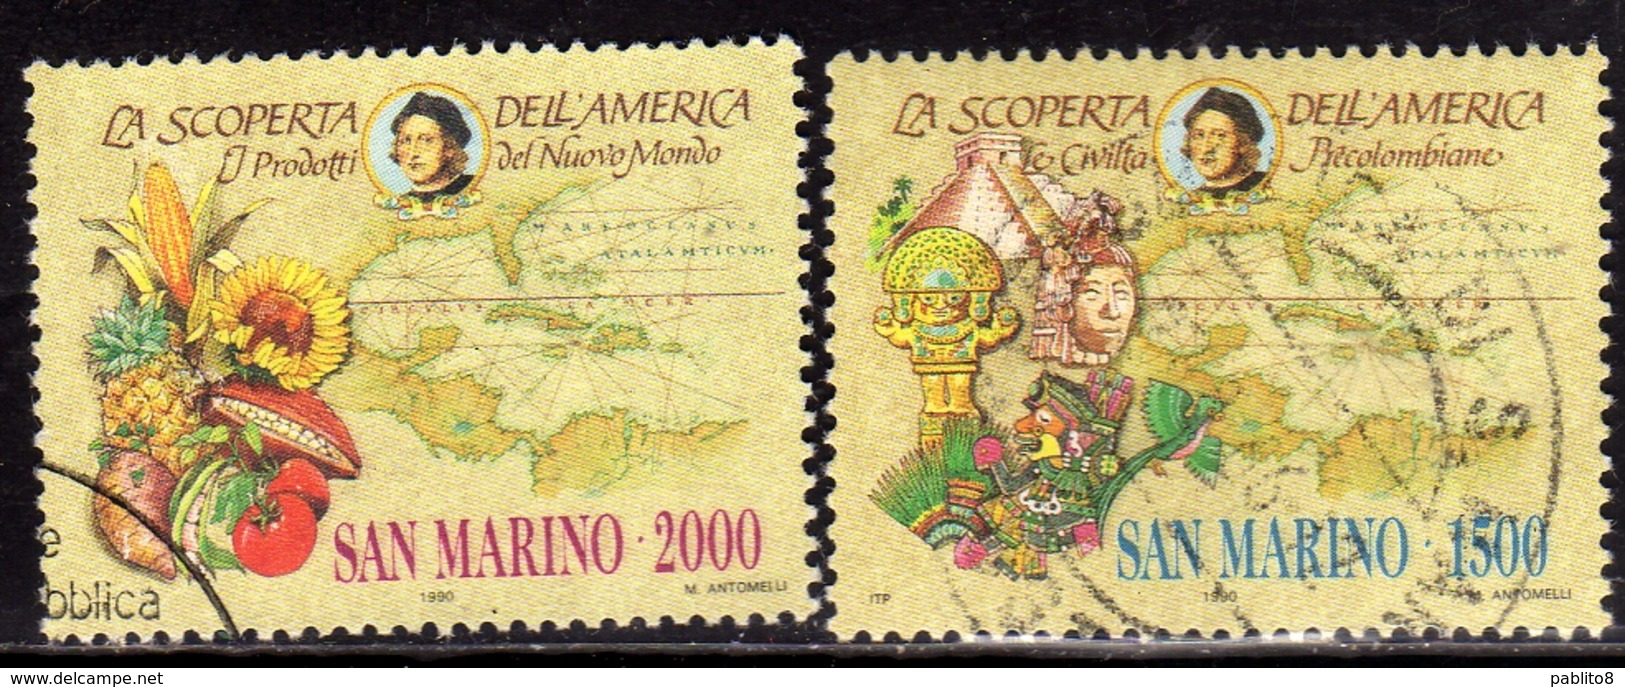 REPUBBLICA DI SAN MARINO 1990 CELEBRAZIONI COLOMBIANE SERIE COMPLETA COMPLETE SET USATA USED OBLITERE' - Gebruikt